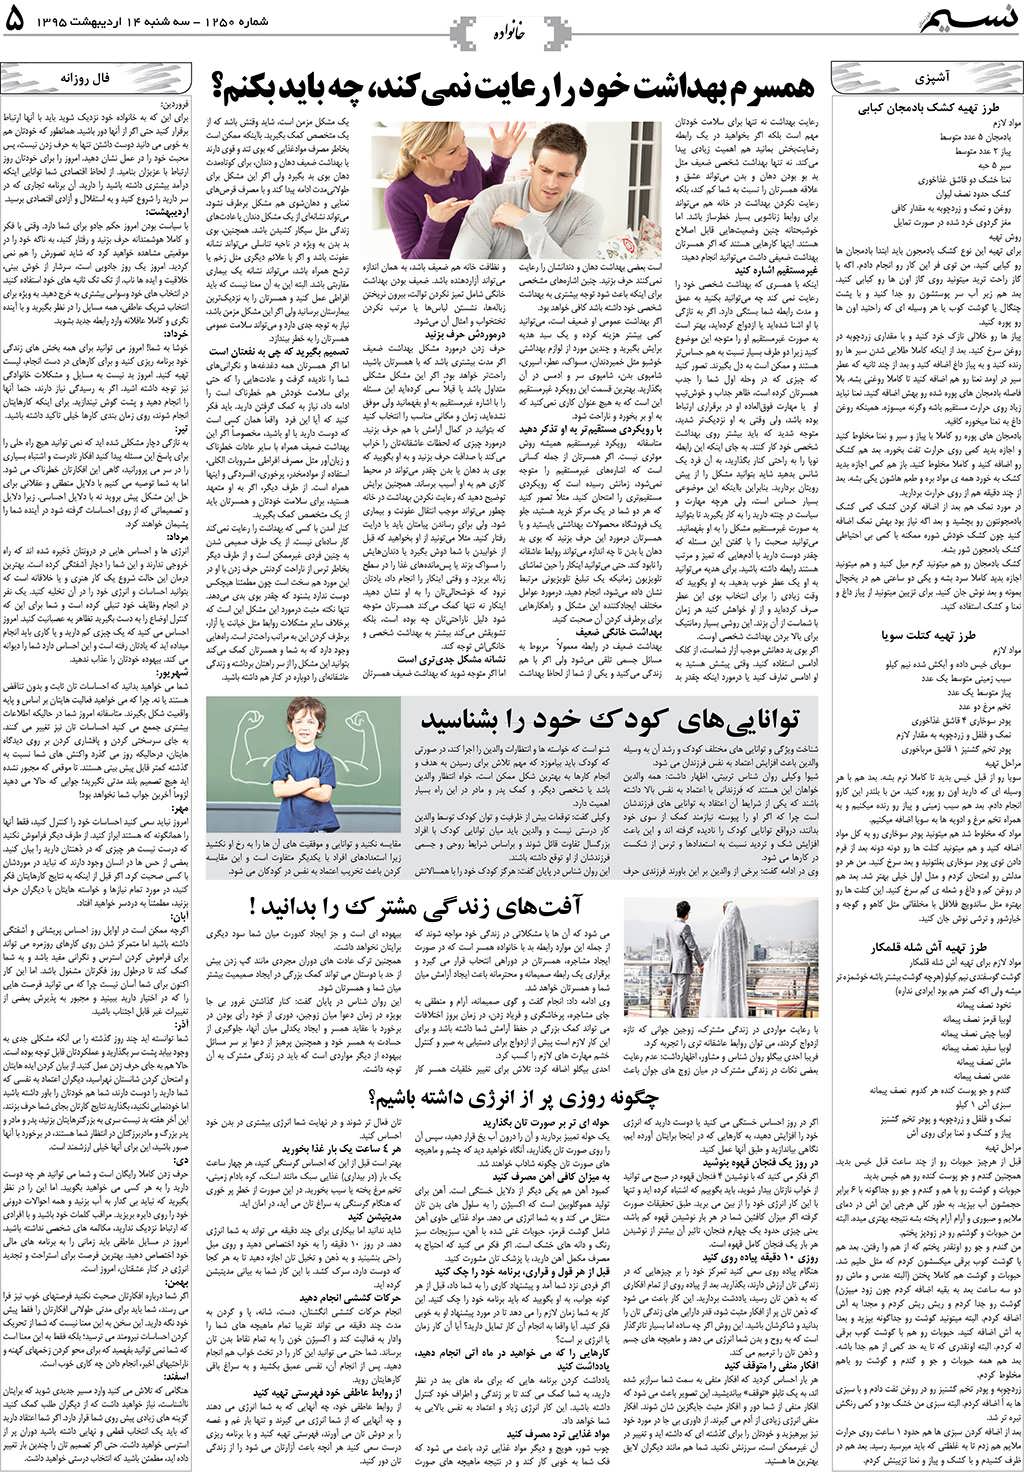 صفحه خانواده روزنامه نسیم شماره 1250